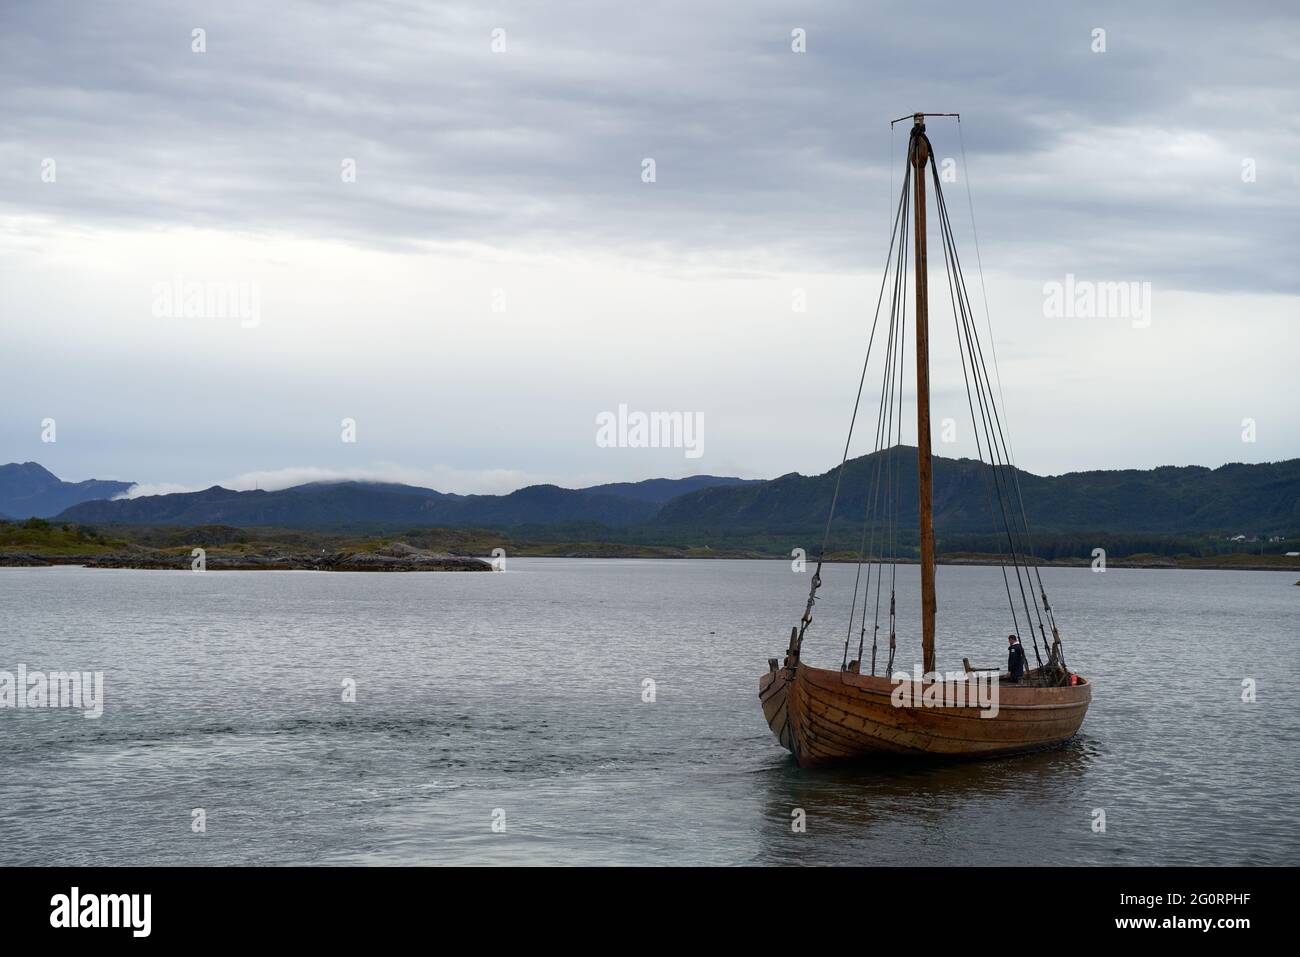 VEVANG, NORVEGIA - 28 luglio 2020: La nave vichinga con alcuni turisti sta navigando tra le isole vicine alla strada dell'Oceano Atlantico in Norvegia Foto Stock